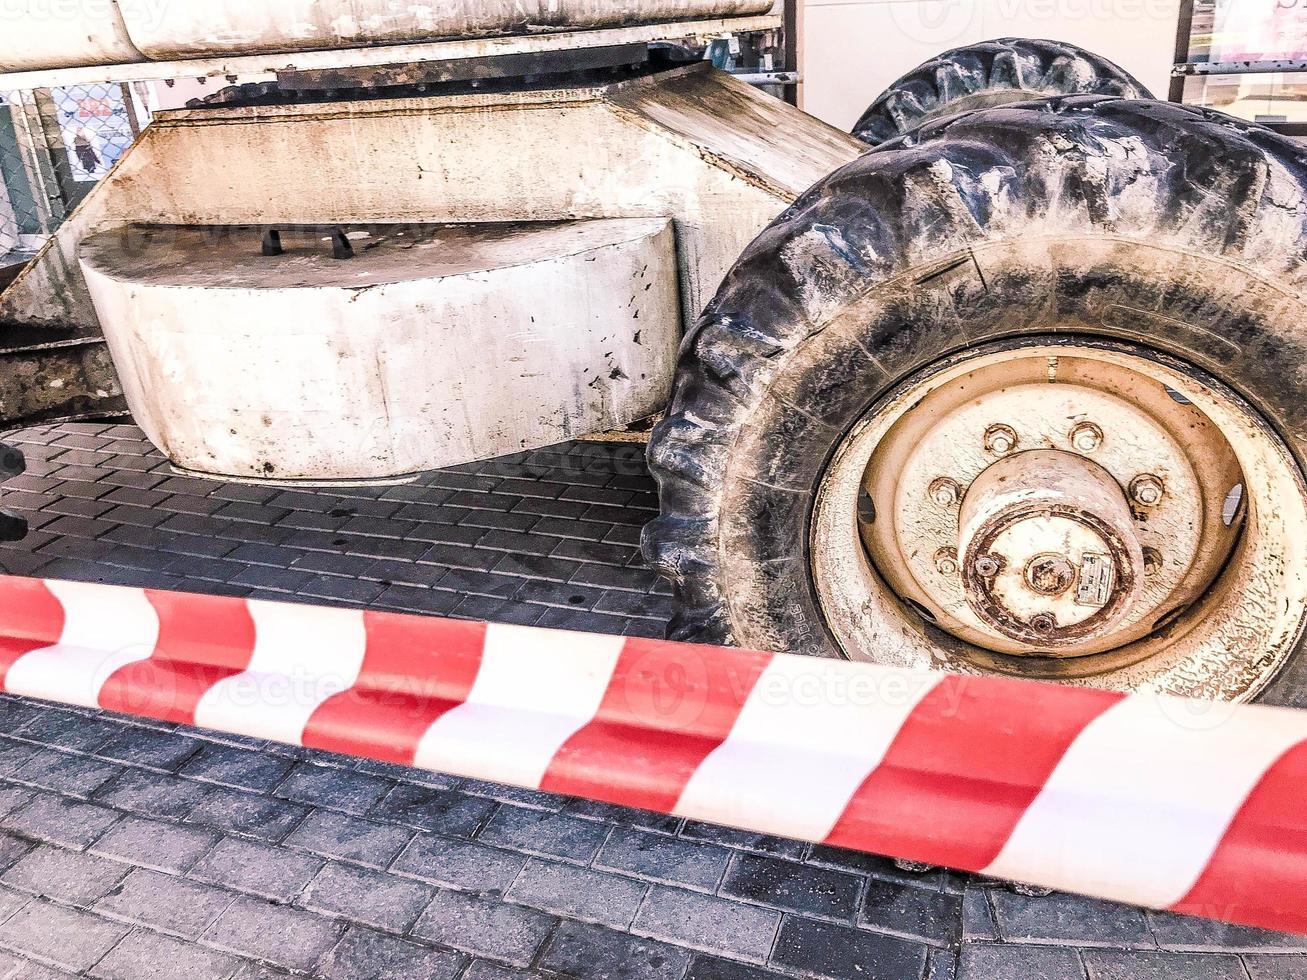 Leistungsstarke große Räder mit Lauffläche und Reifen von Offroad-Baumaschinen, Traktoren, Autos vor dem Hintergrund eines rot-weißen Schutzbandes foto